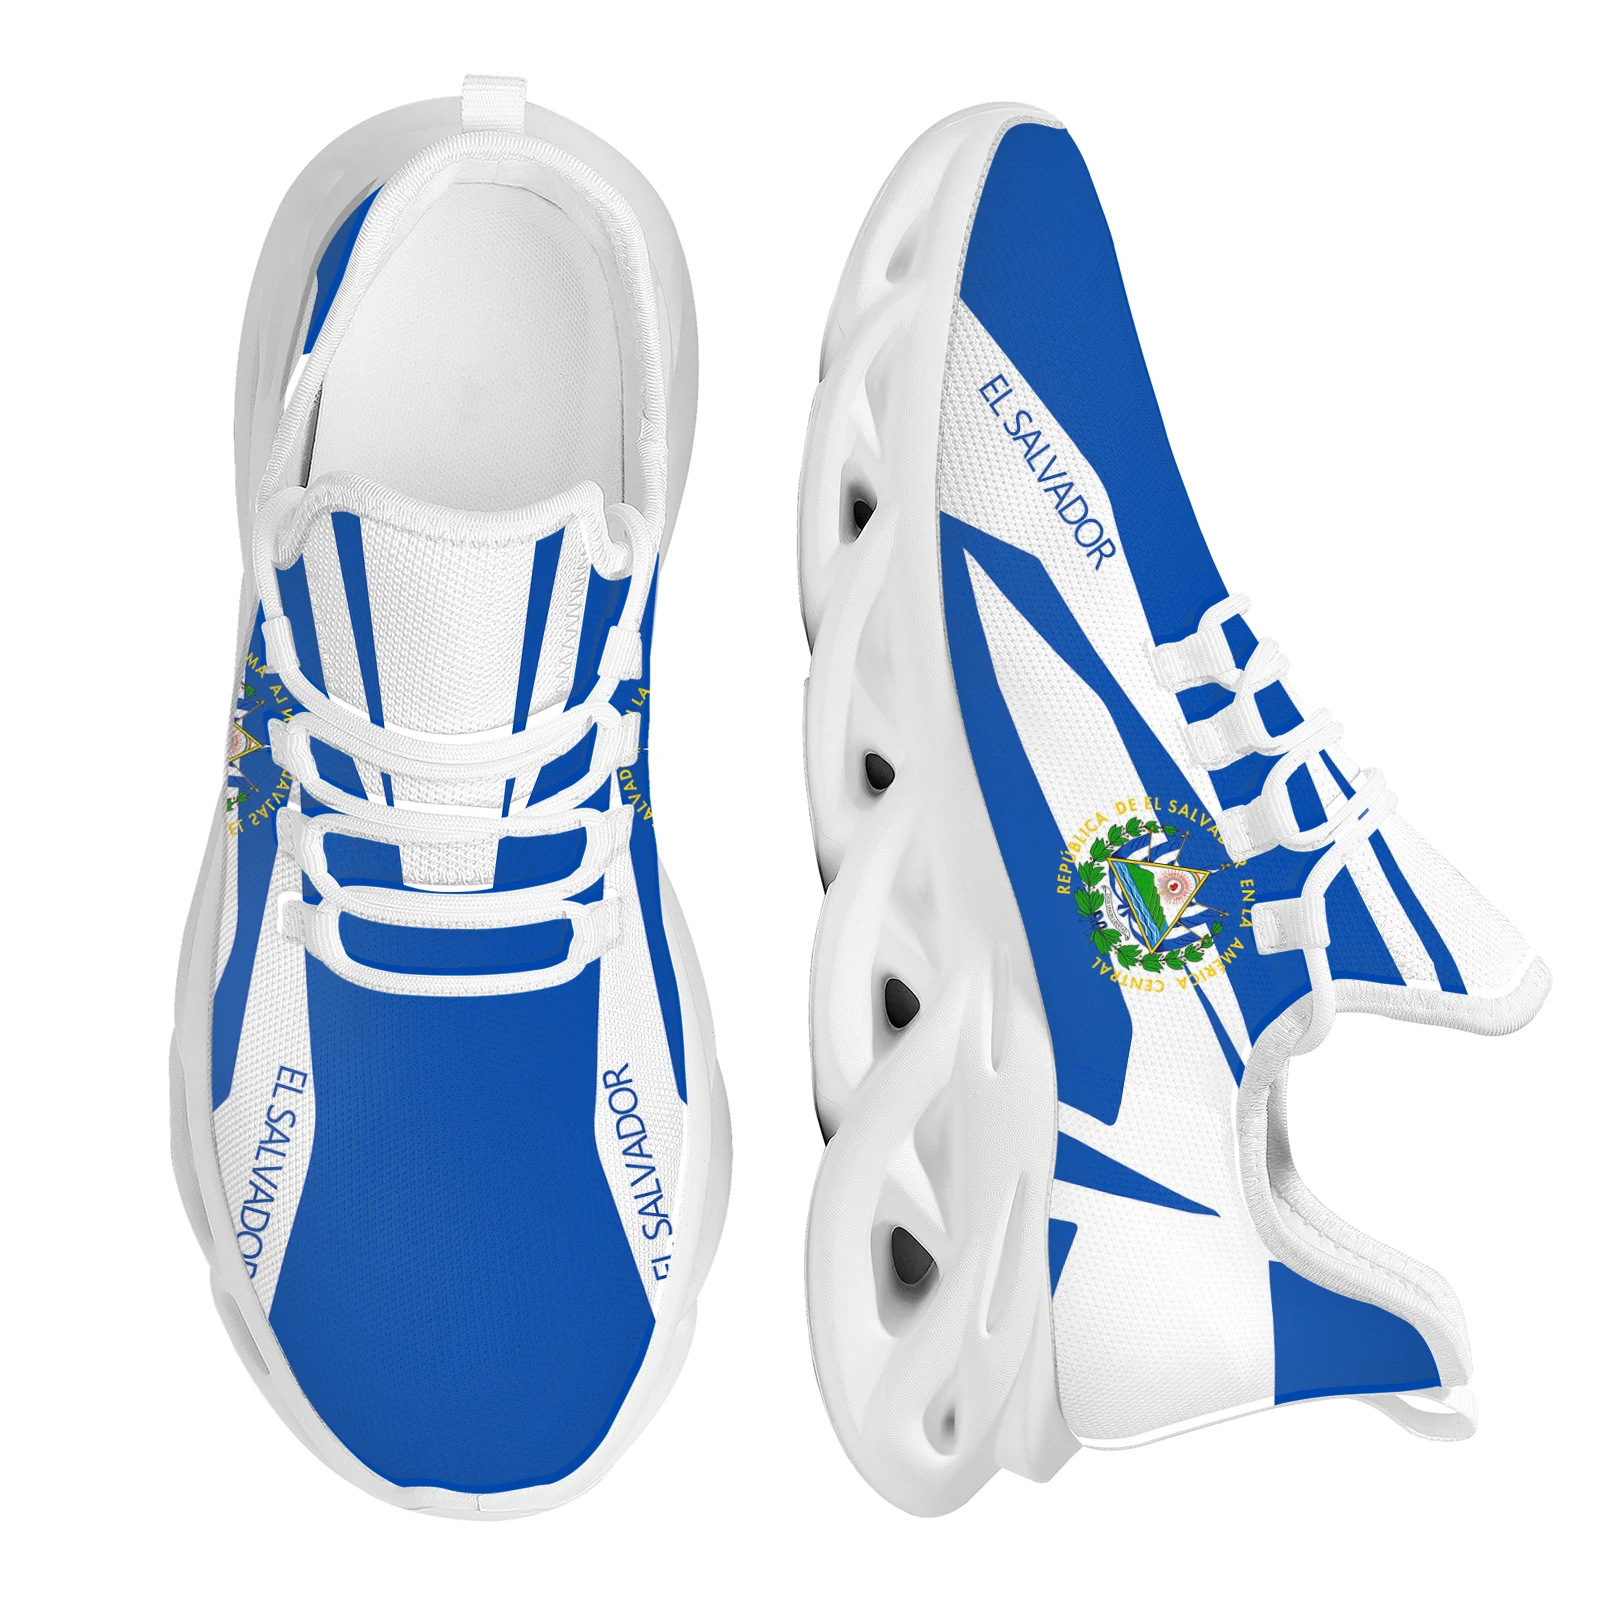 

INSTANTARTS Blue El Salvador Flag Design Country National Emblem Printing Lightweight Breathable Outdoor Sneakers Platform Shoes